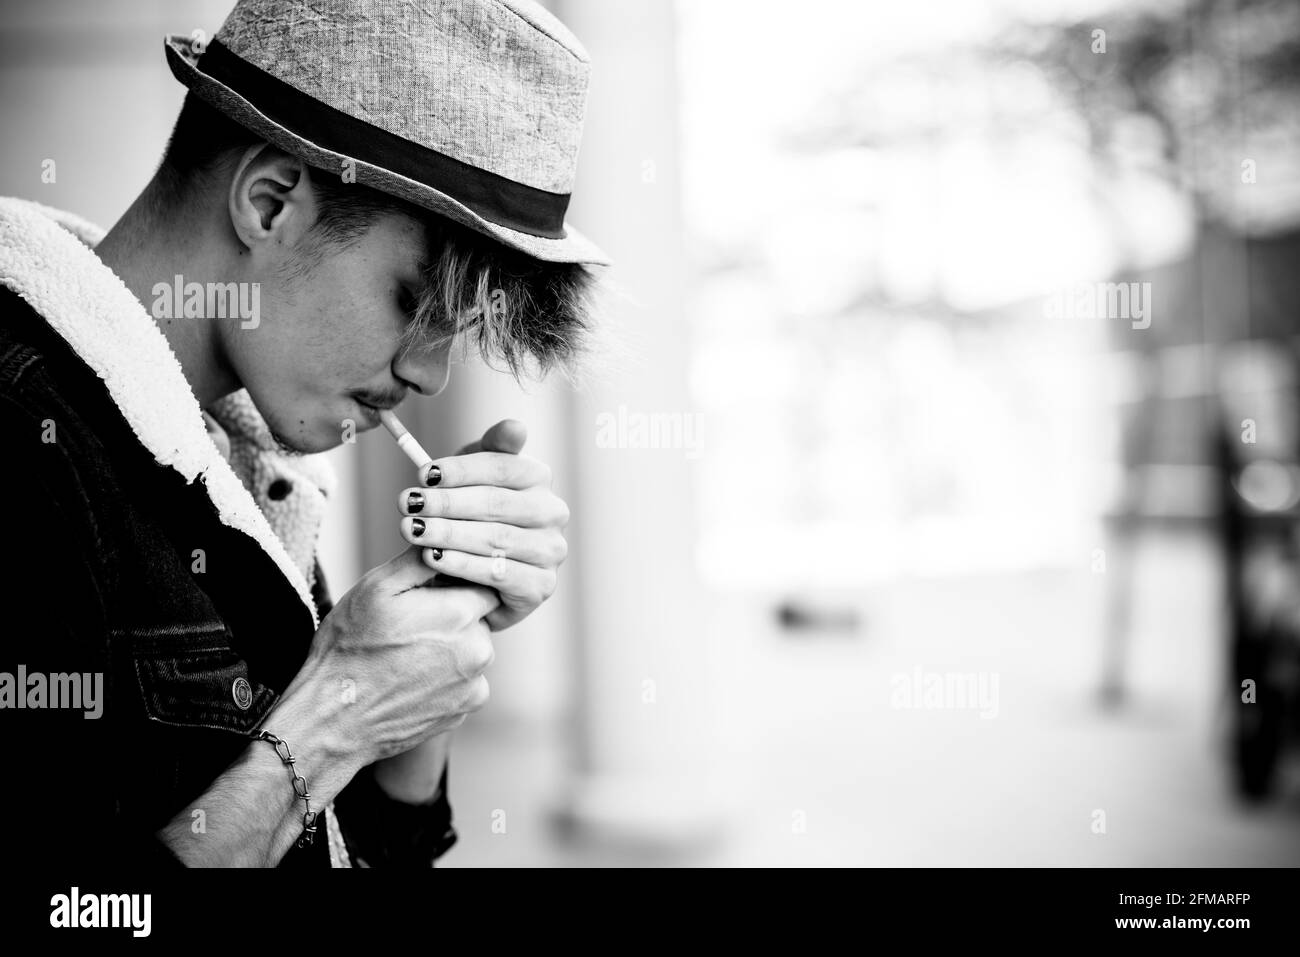 Schwarz-weiß Junge Teenager Porträt Beleuchtung einer Zigarette Im Jugendalter rauchen - nicht gesunder Lebensstil - Coole Alternative kaukasischen hispanischen Kerl Lebensstil Stockfoto